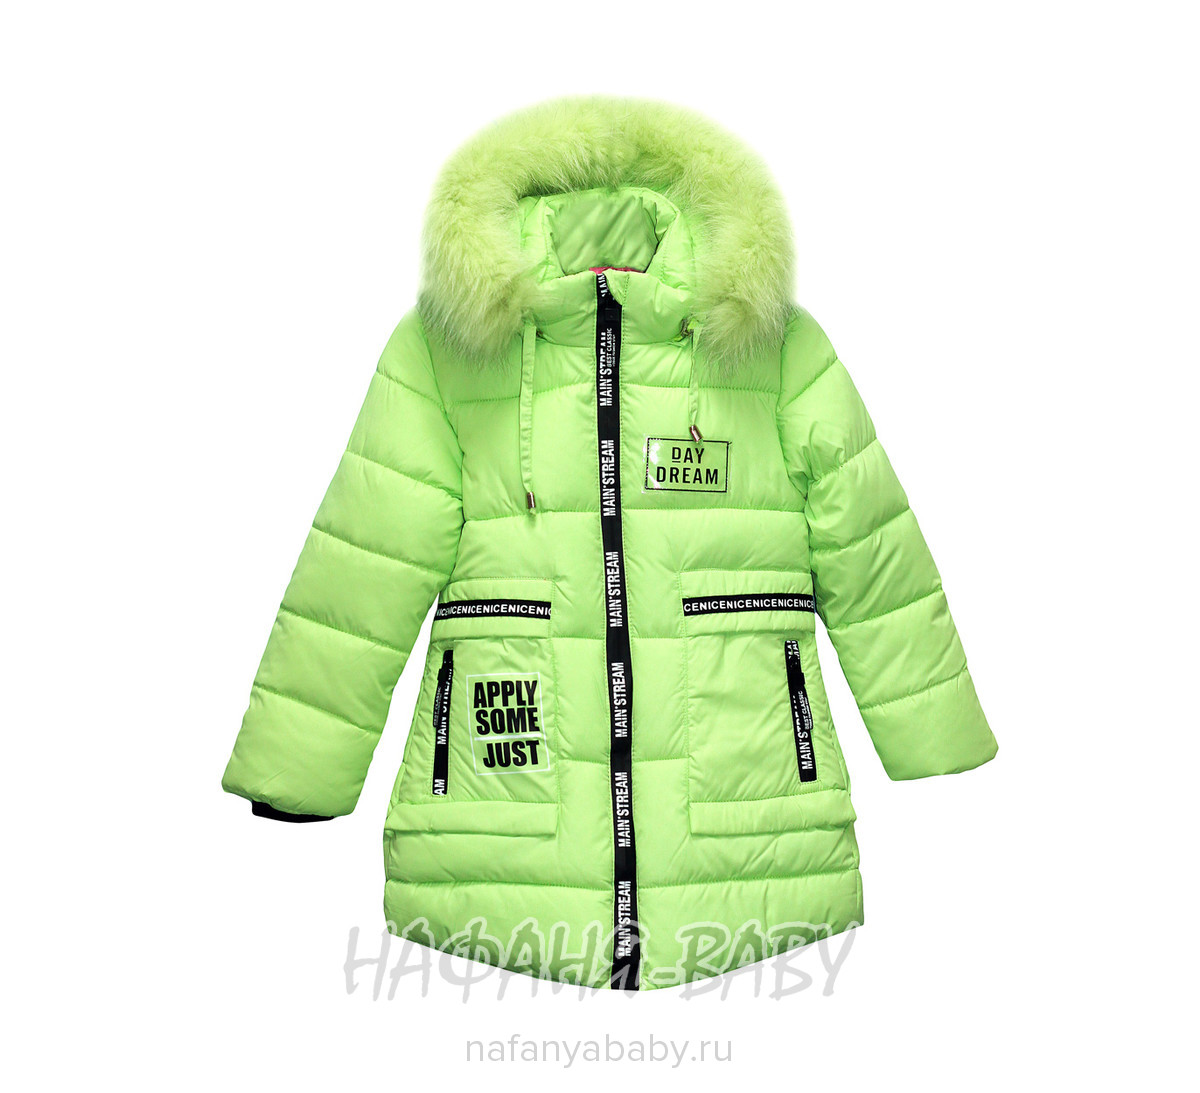 Детская зимняя куртка YINIO, купить в интернет магазине Нафаня. арт: 1802.